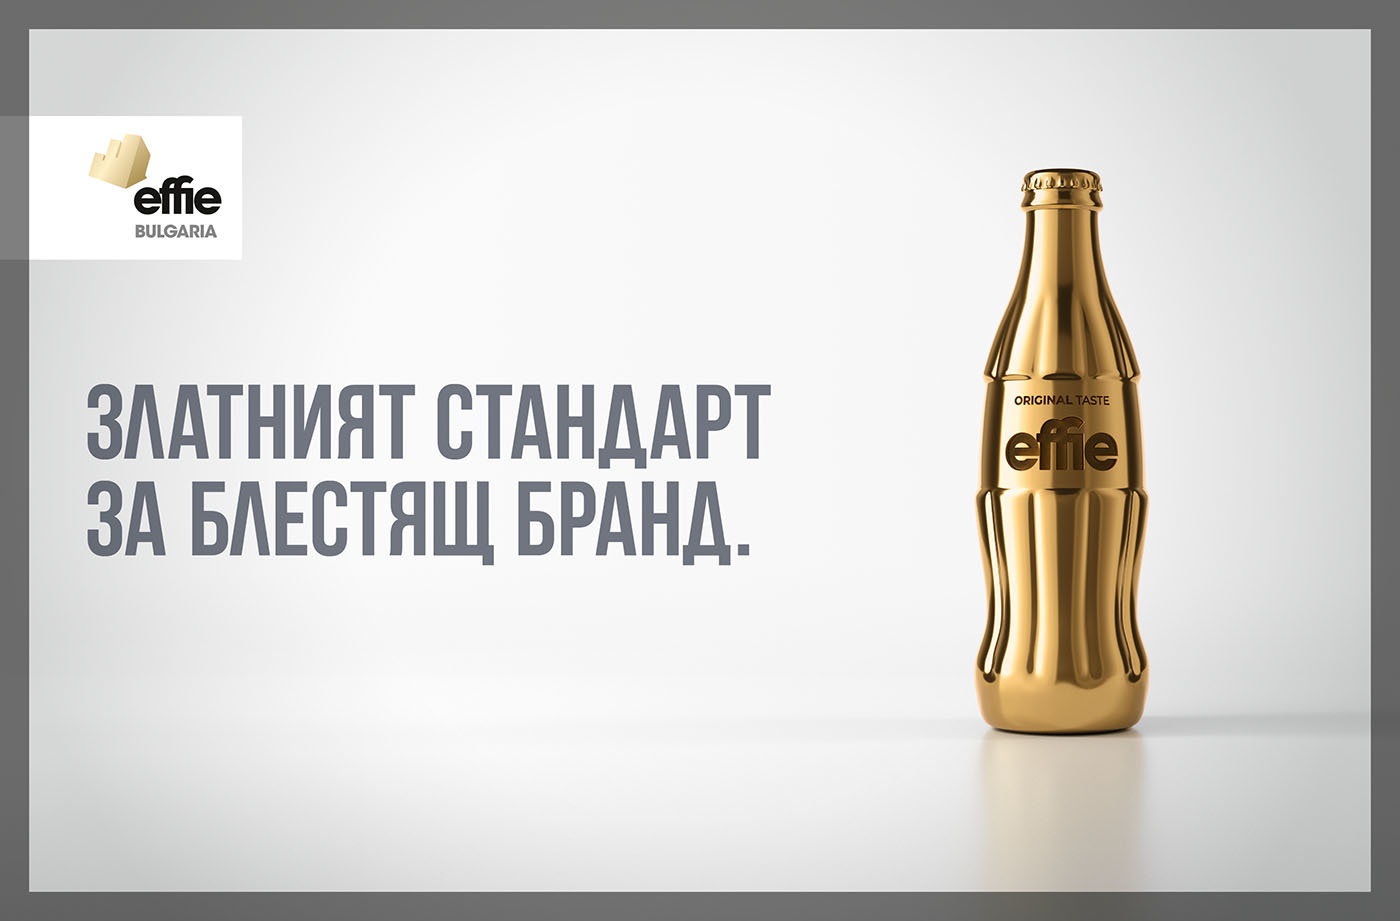 Effie България приема заявки за участие в своето четиринадесето издание. Комуникационната кампания